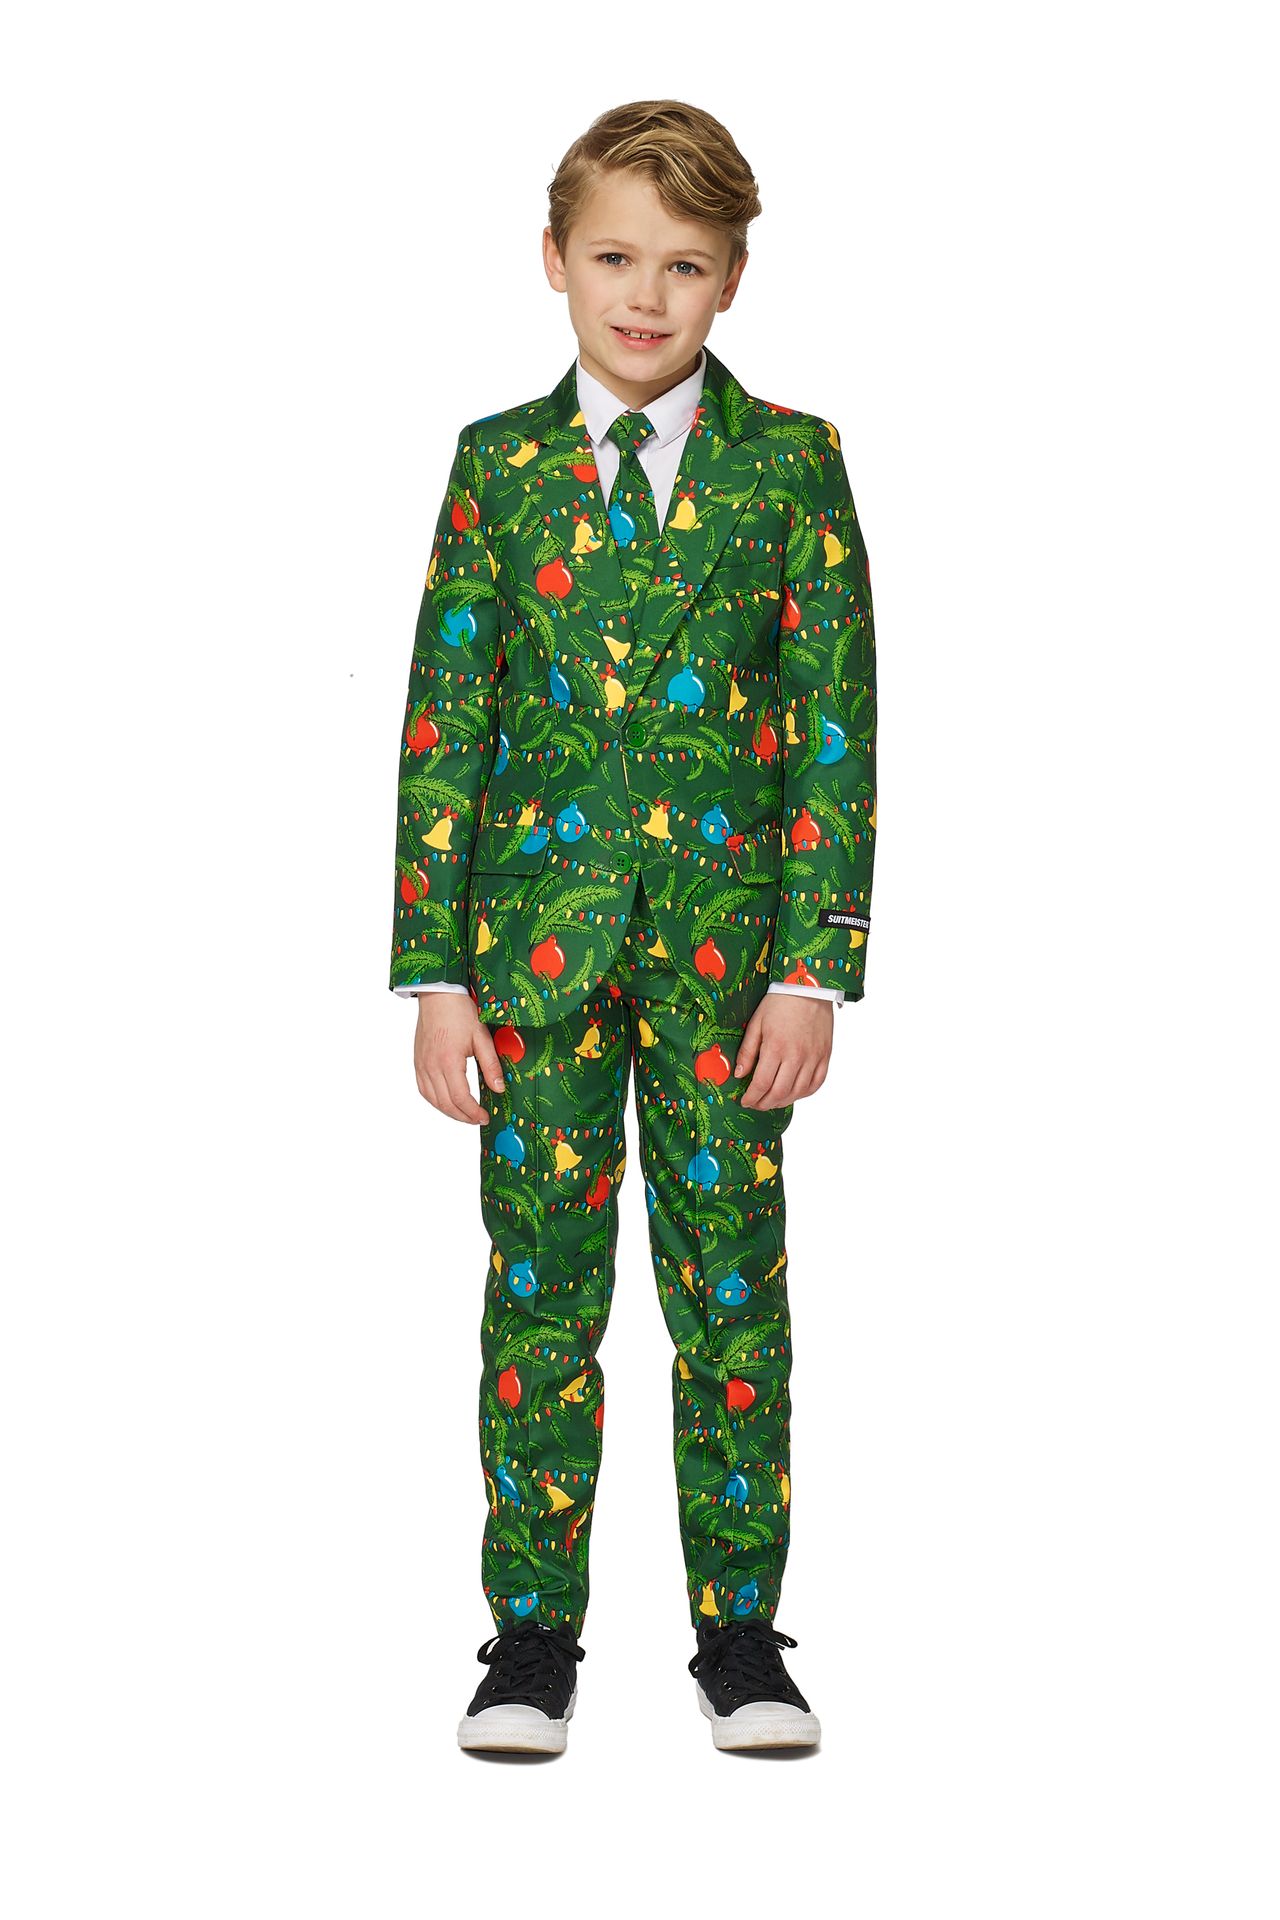 Groene kerstboom Suitmeister kostuum jongens